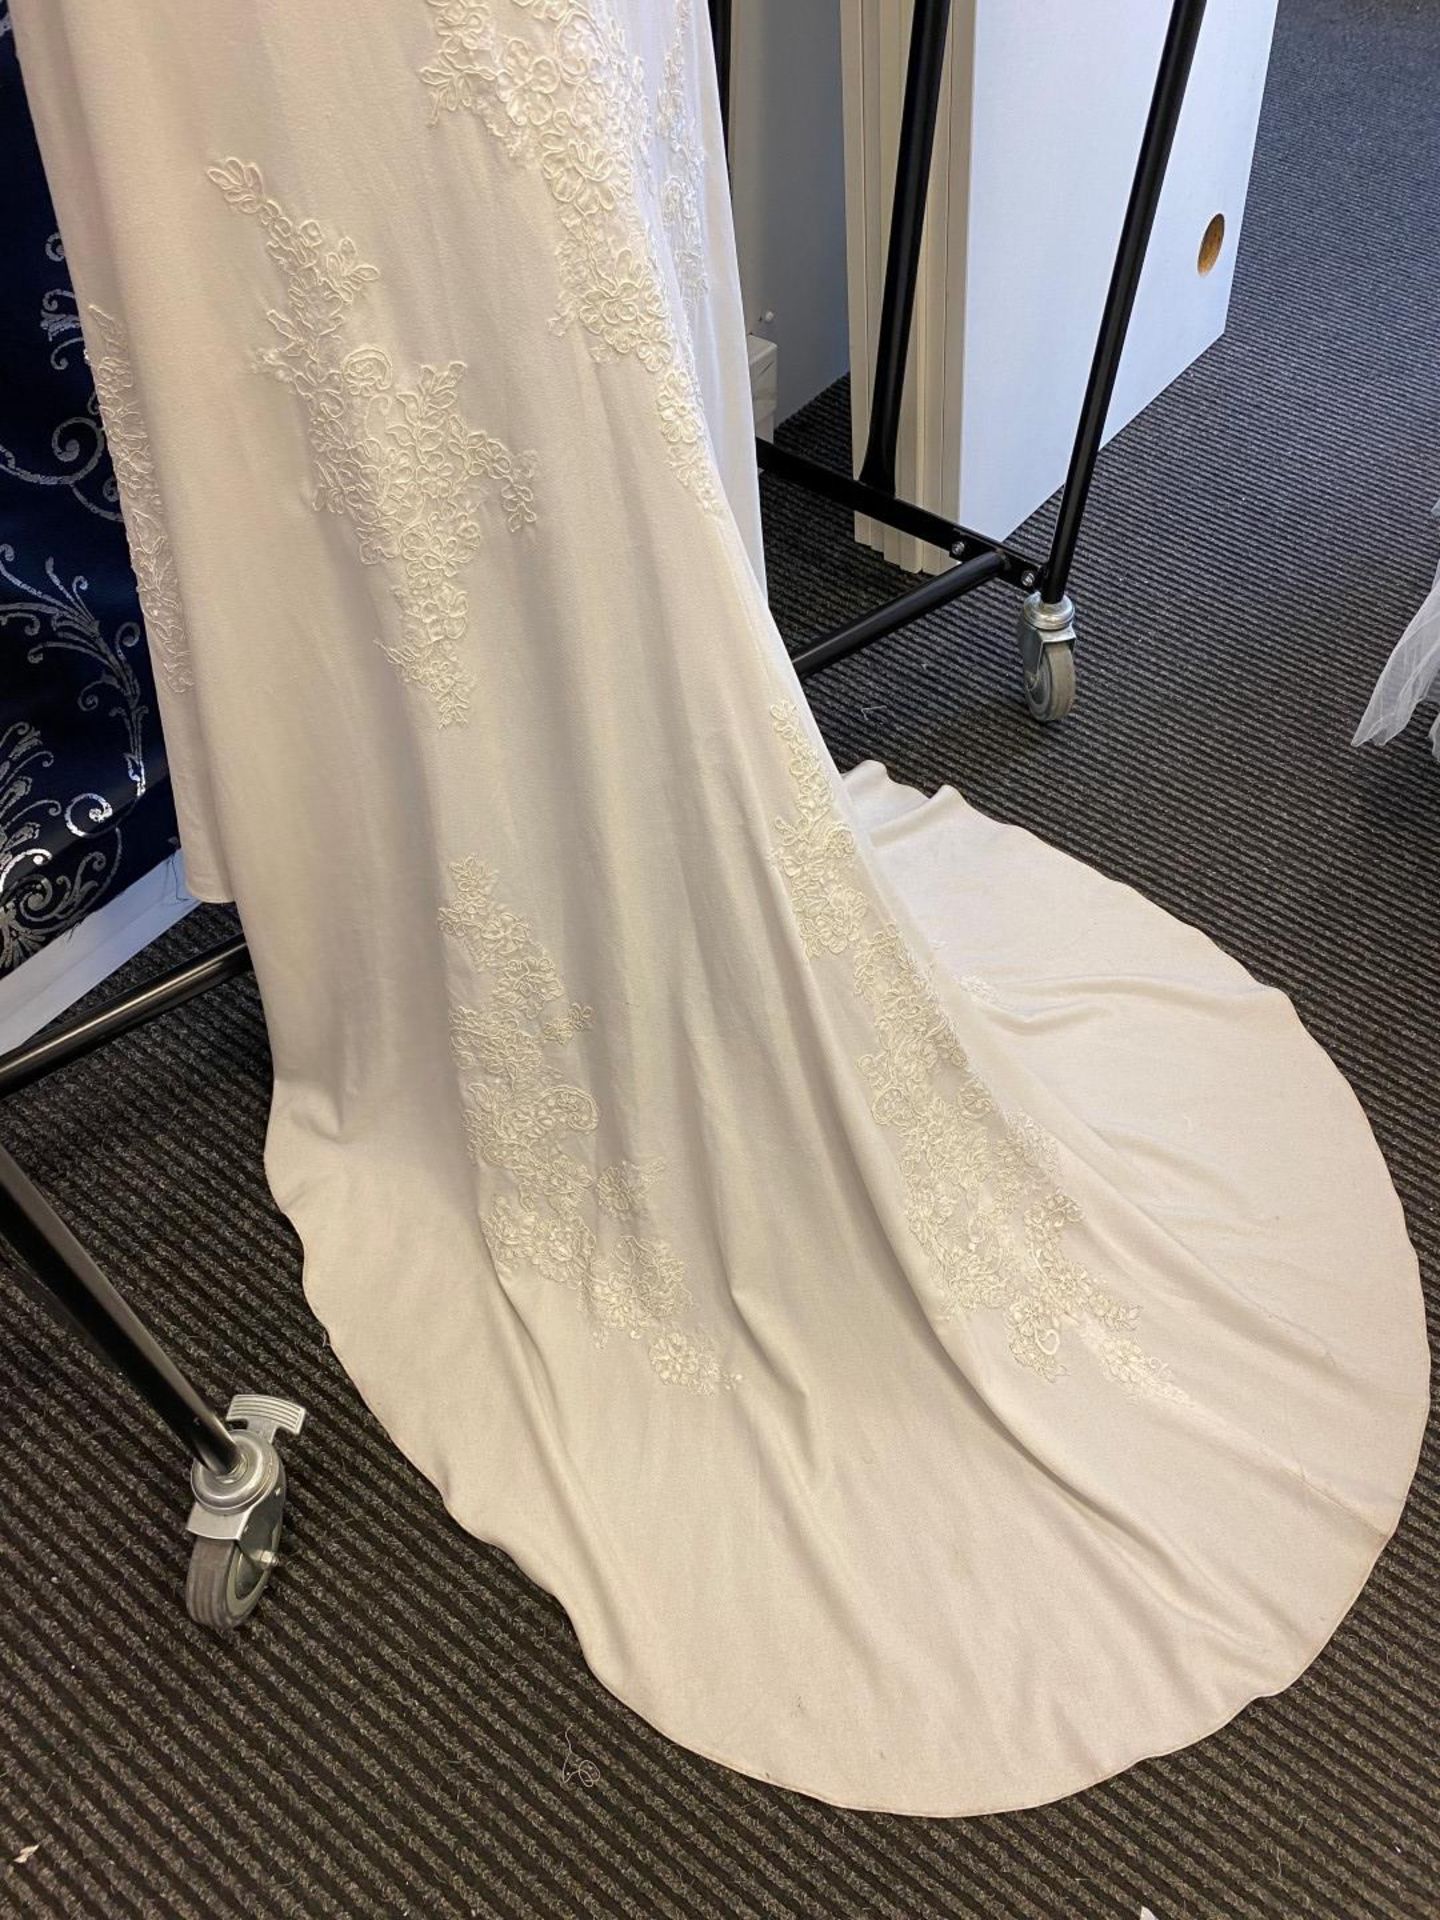 1 x MORI LEE Stunning Chiffon & Lace Biased Cut Designer Wedding Dress Bridal Gown RRP £1,500 UK 12 - Image 10 of 10